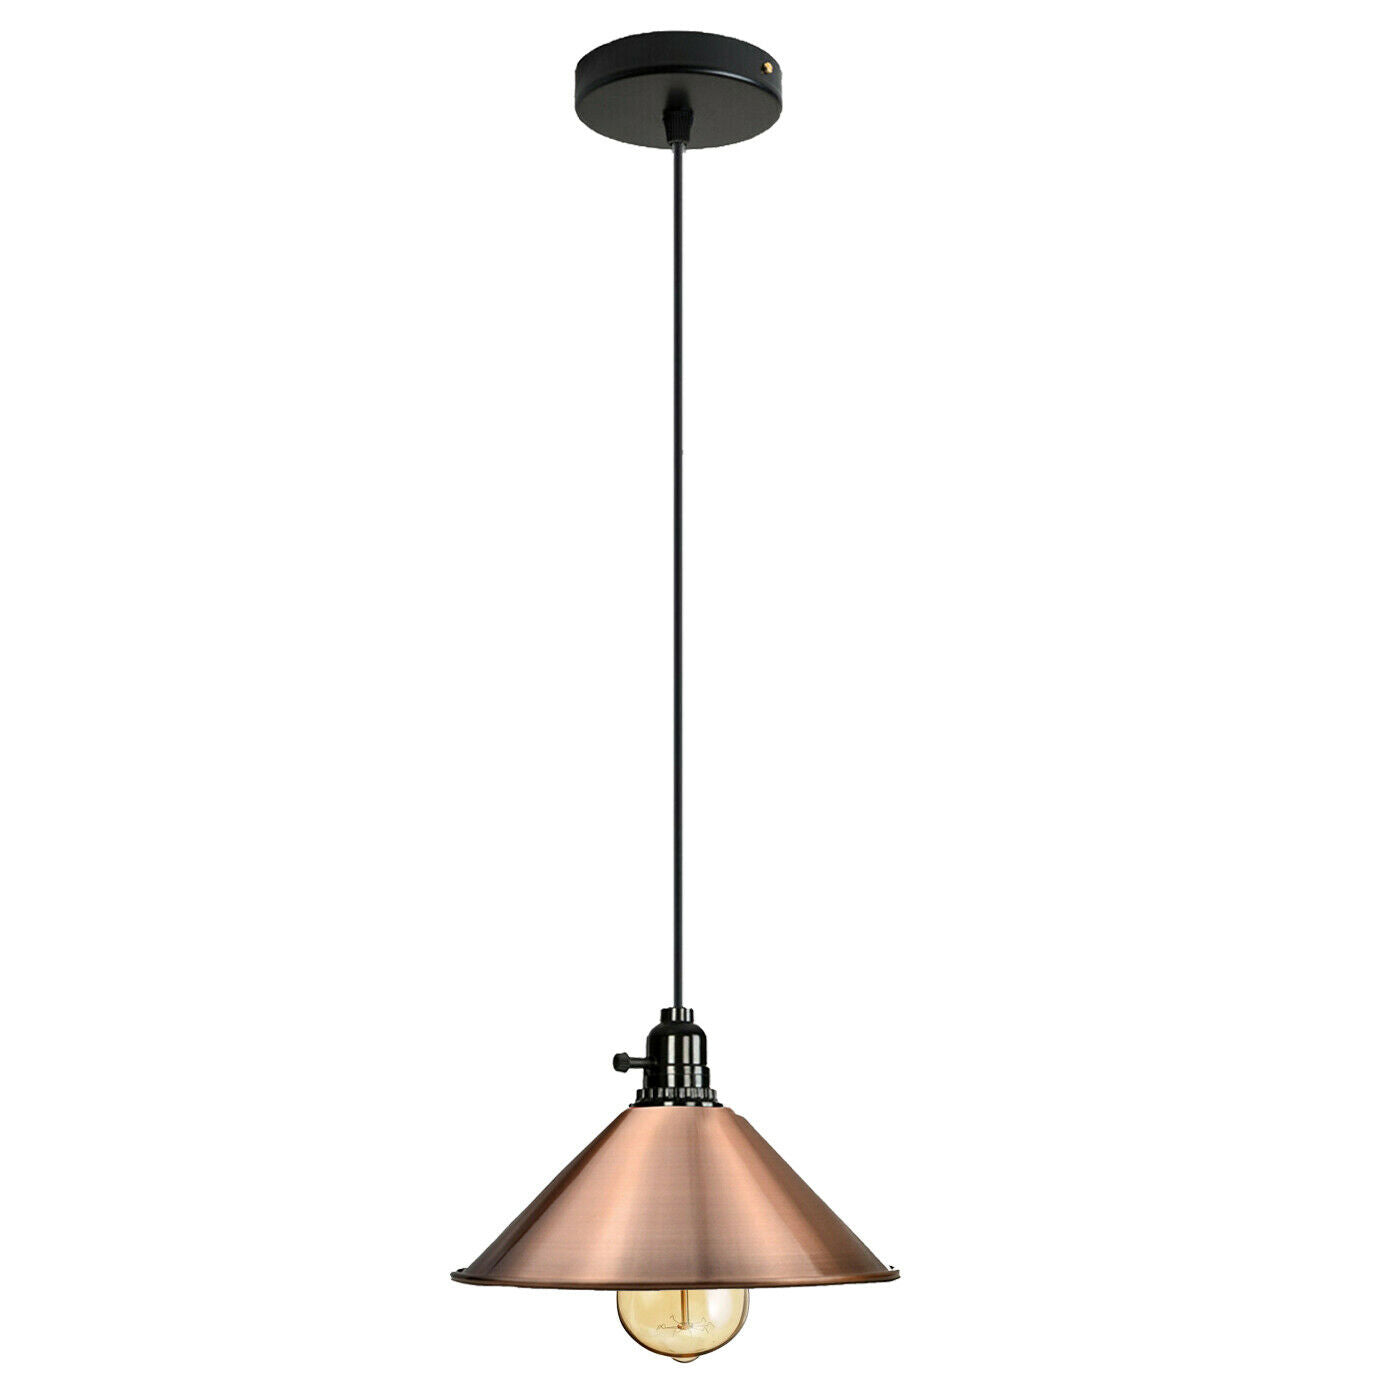 Vintage Industrial Metal Ceiling Pendant Shade Modern Hanging Retro Lights~2056 - LEDSone UK Ltd